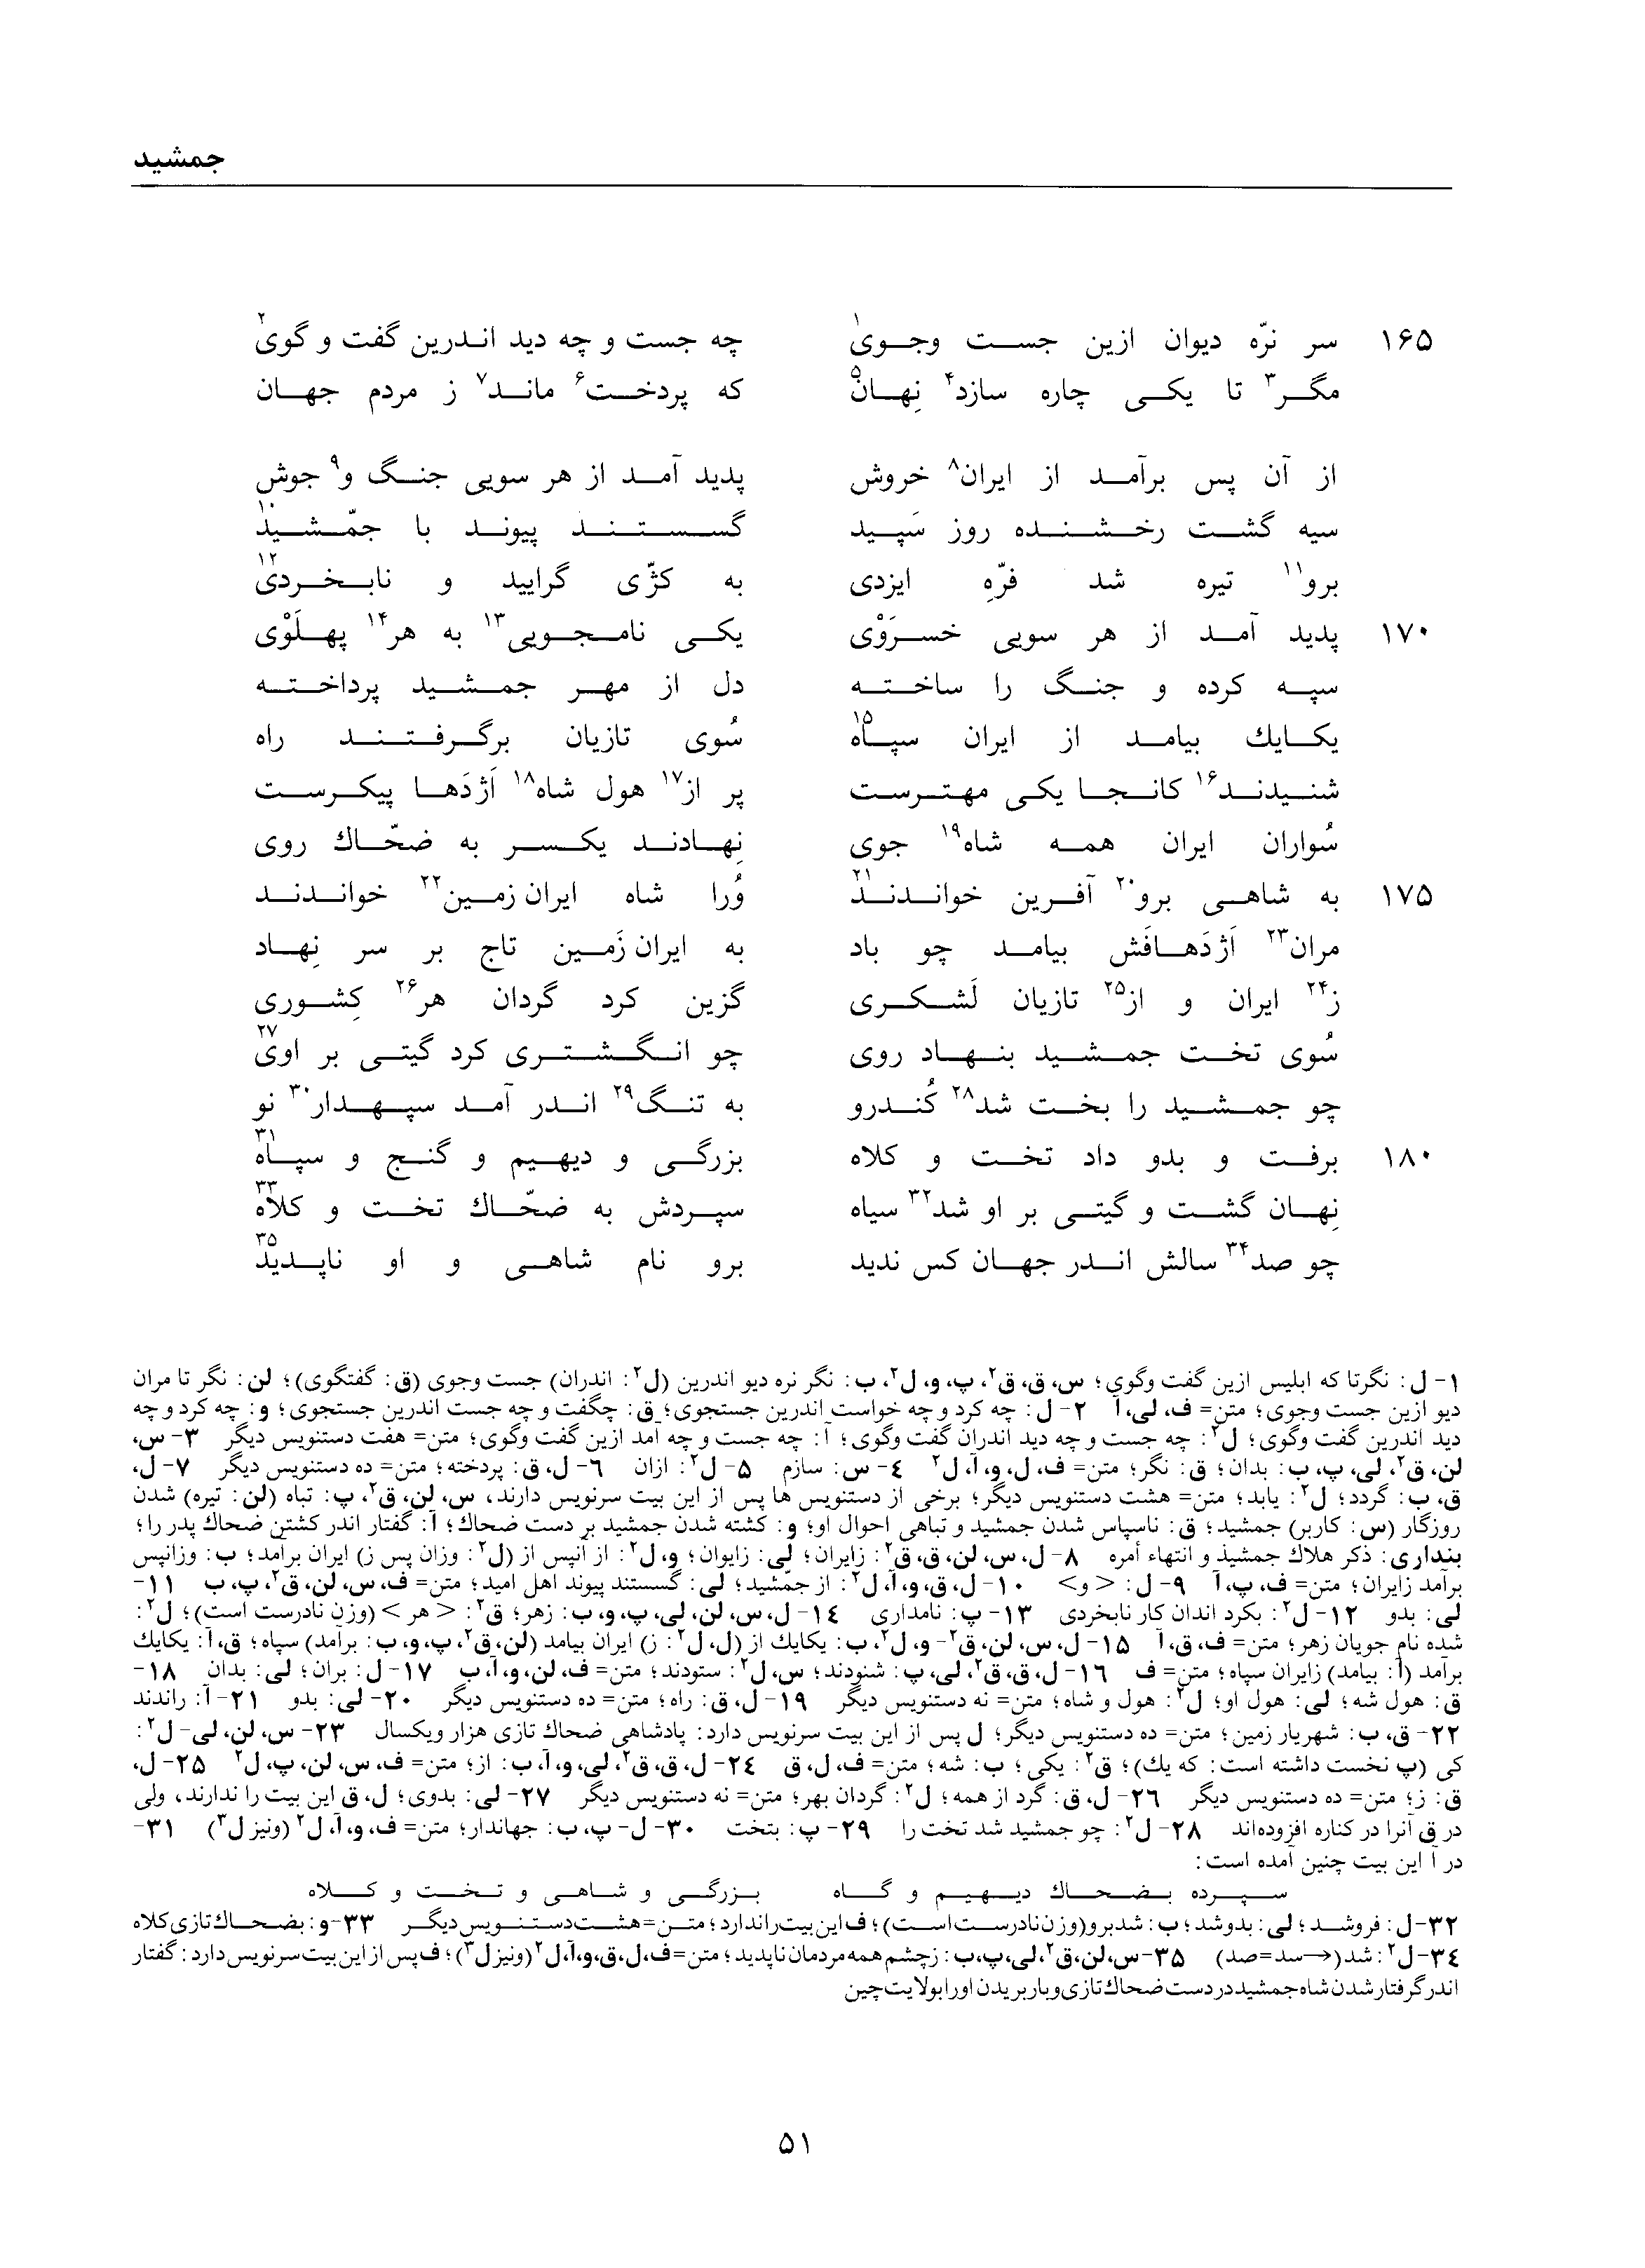 vol. 1, p. 51